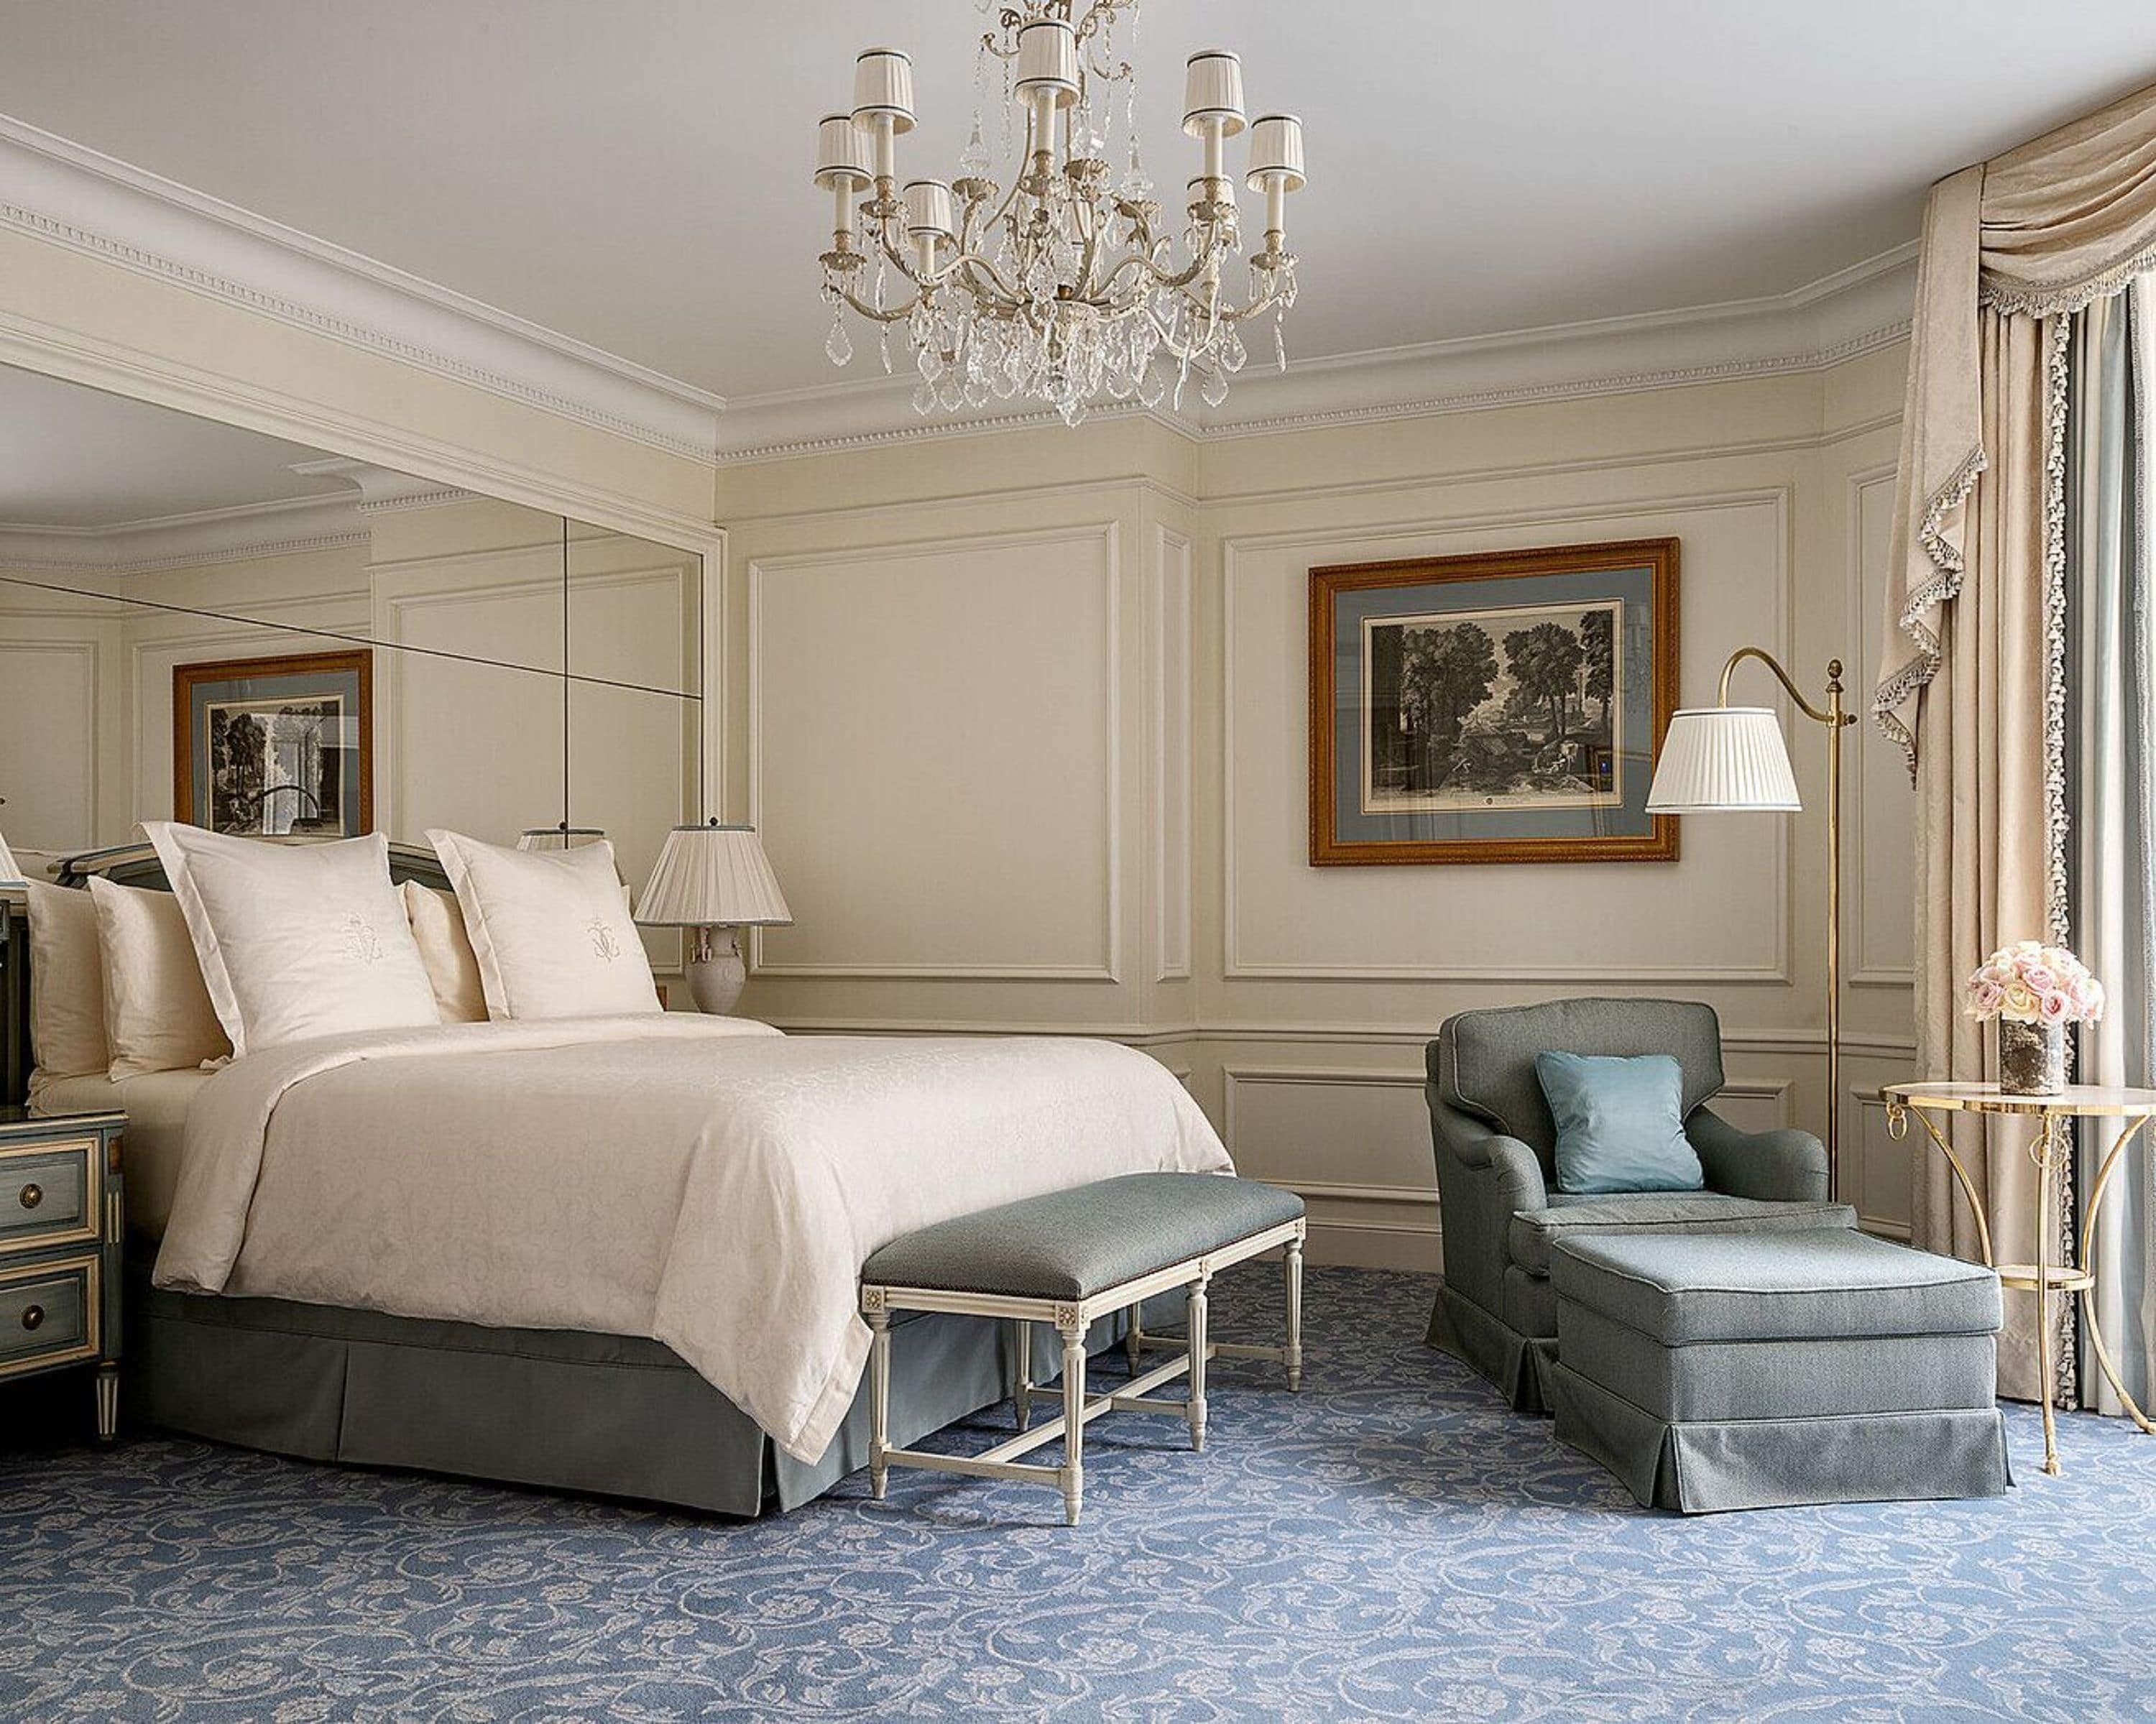 Four Seasons Hotel George V - Paris, France